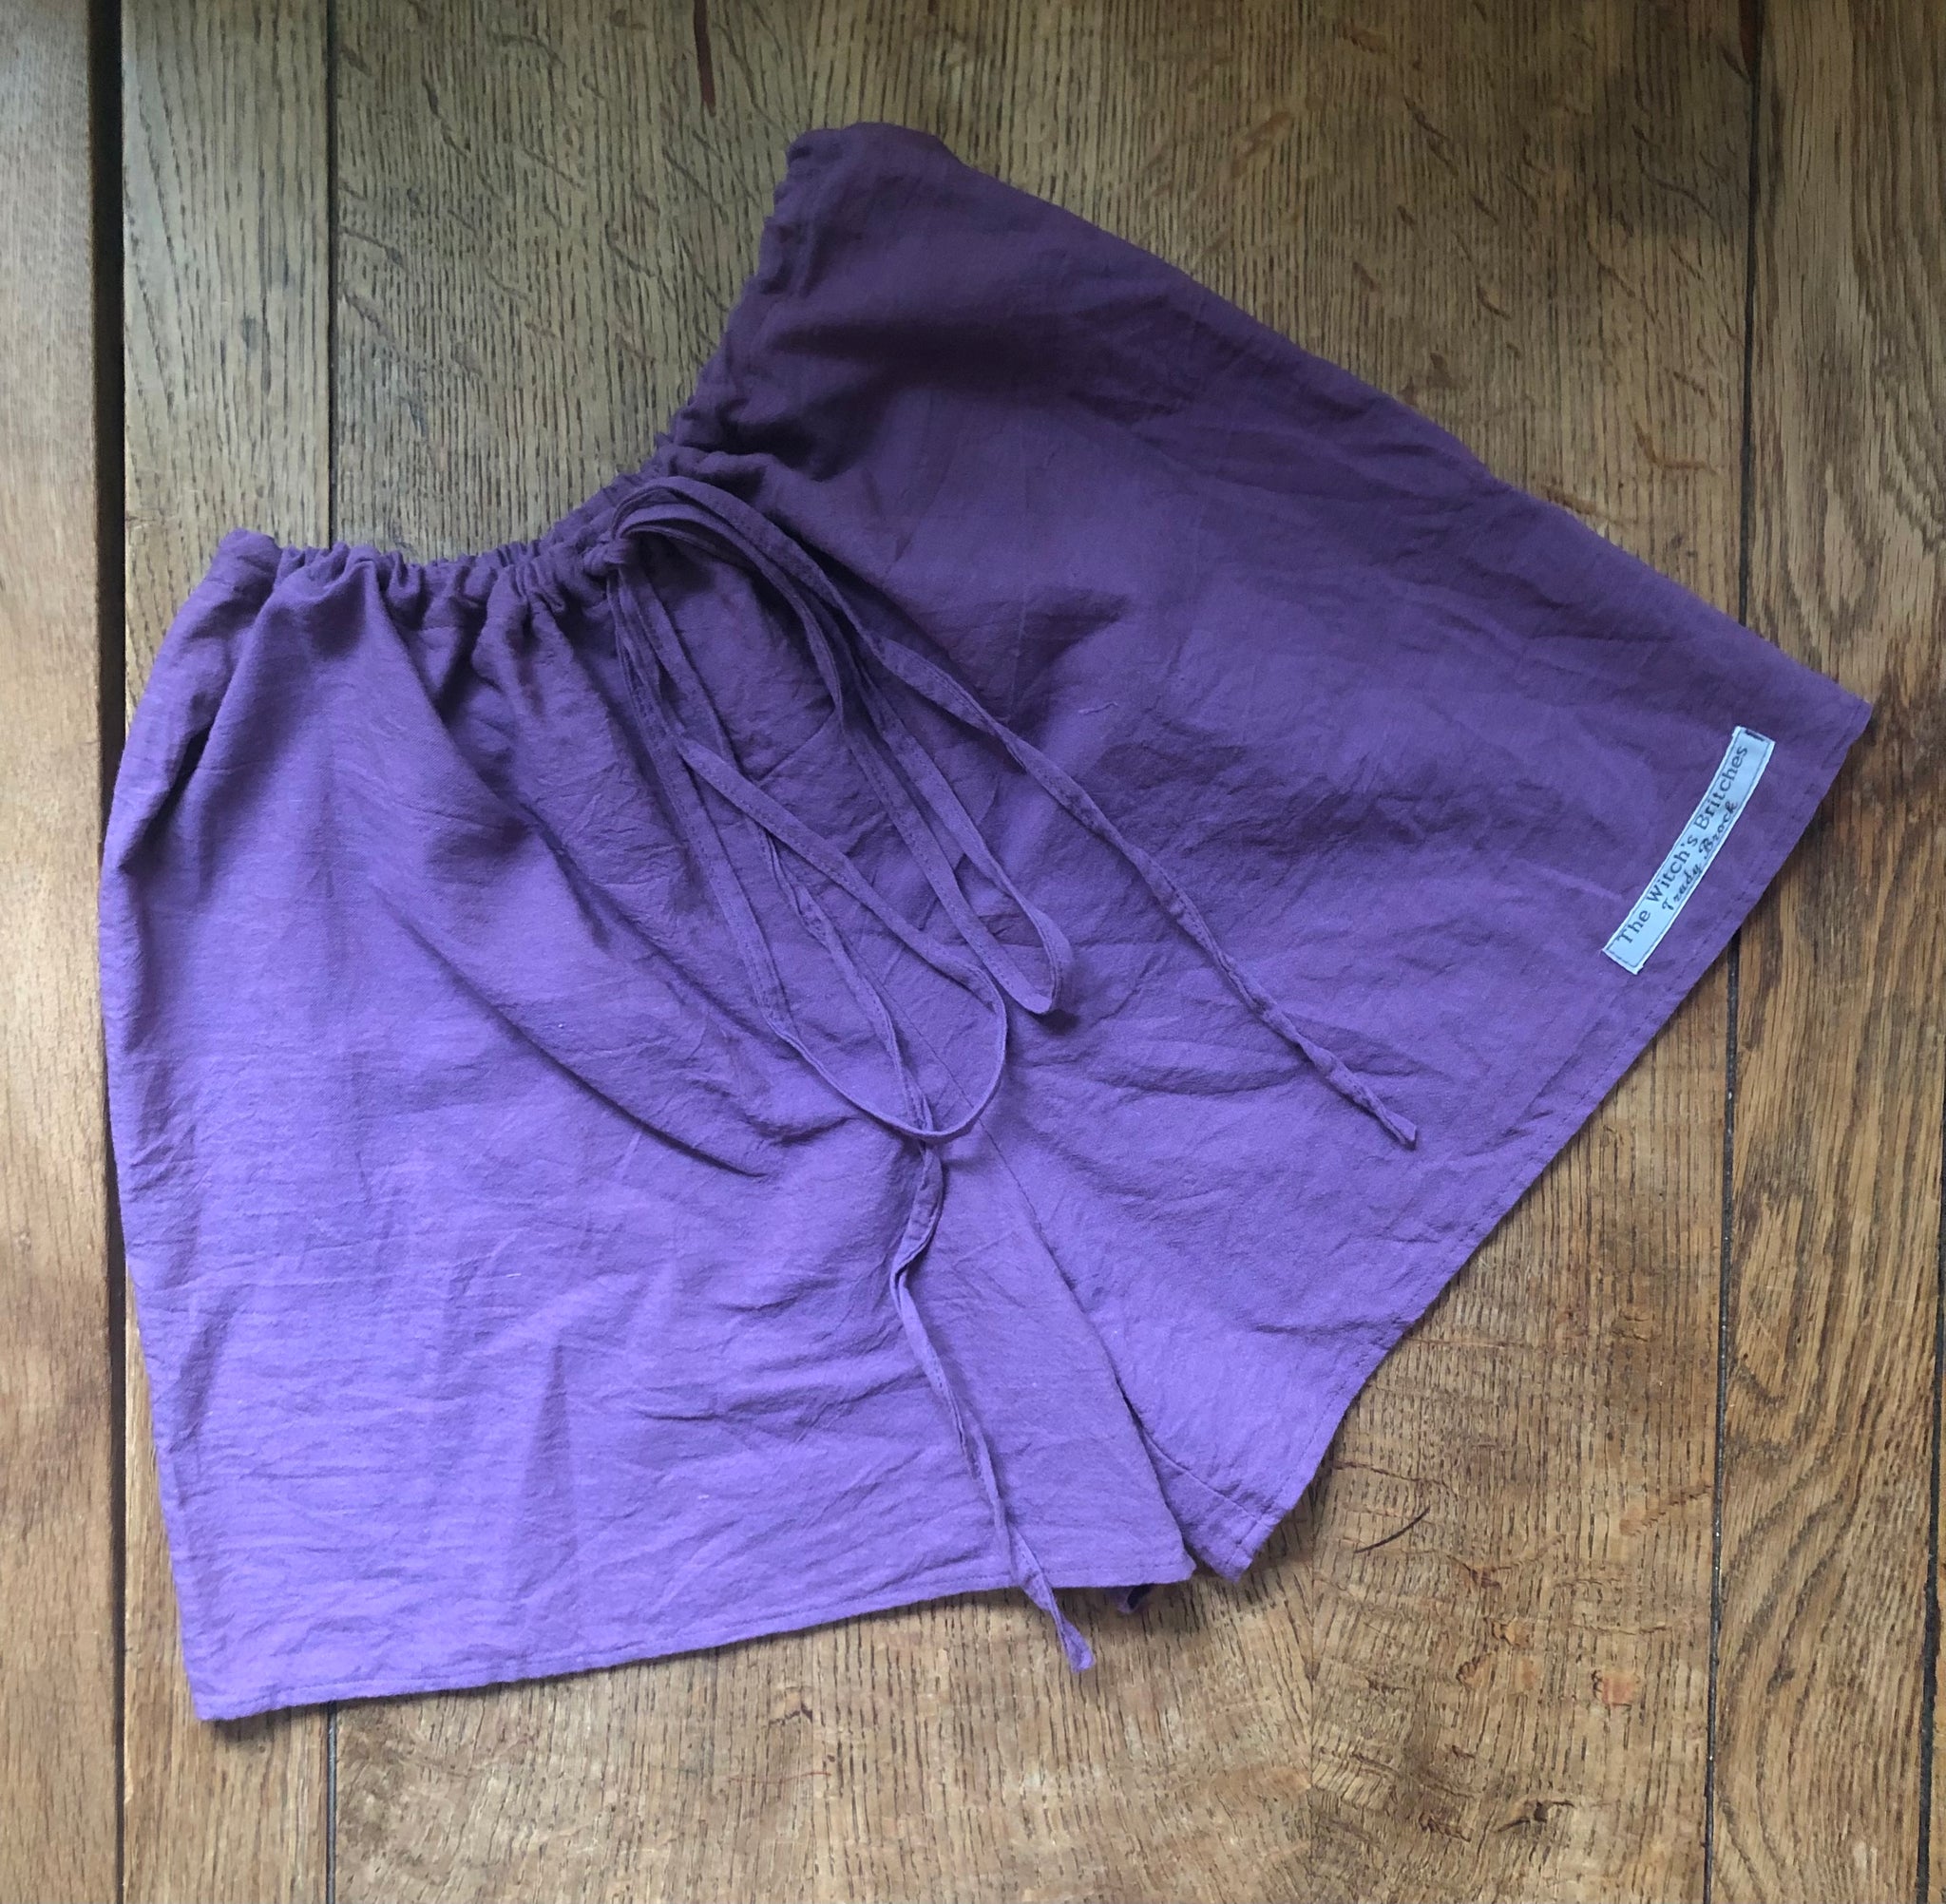 Grape organic fairtrade cotton women’s boxer shorts (40”)